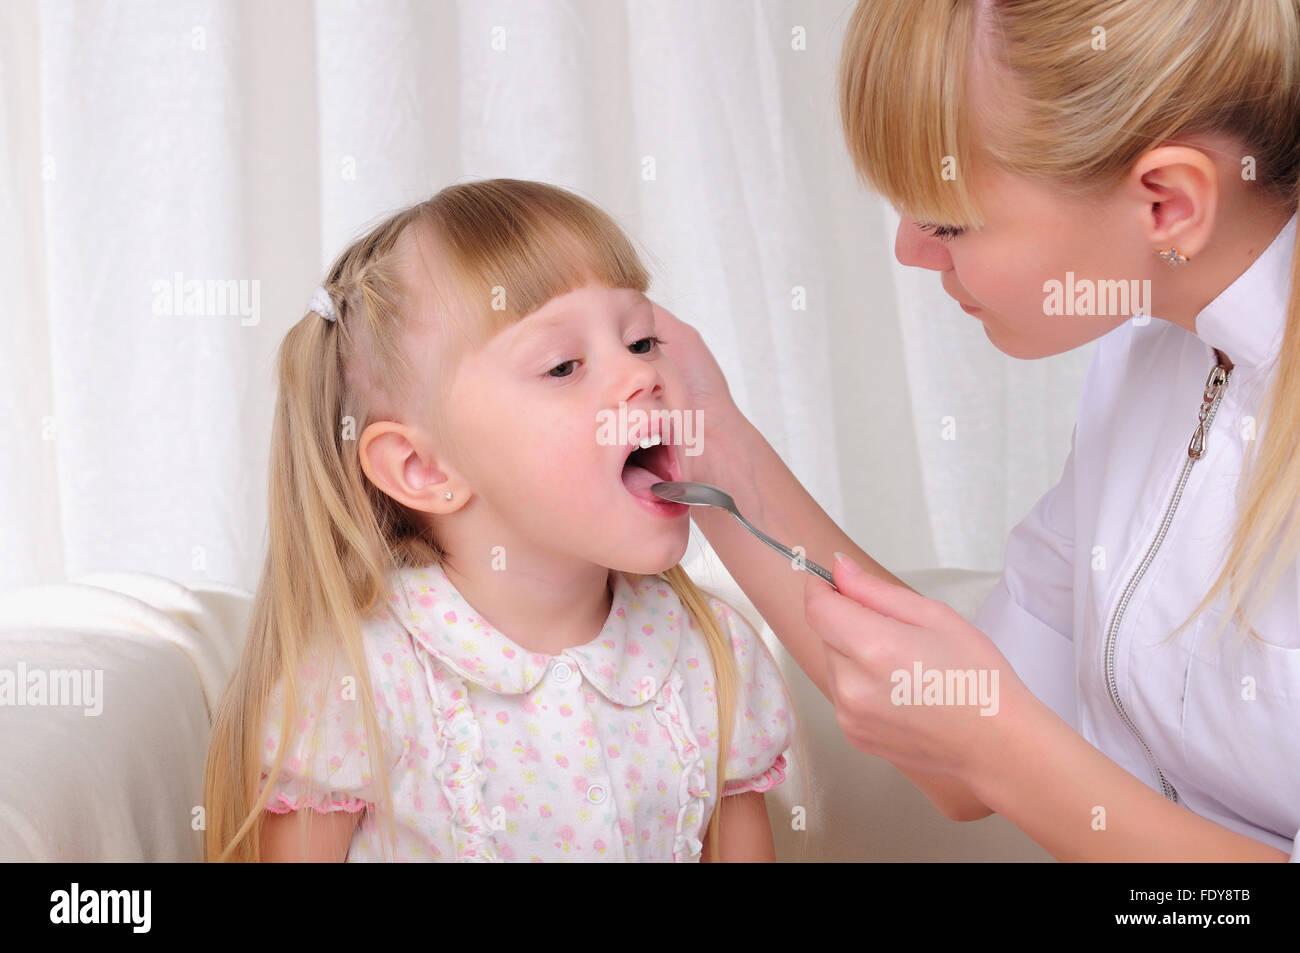 Мелкими глотками. Осмотр горла у ребенка. Врач осматривает горло ребенка. Заболевания рта и глотки у детей.